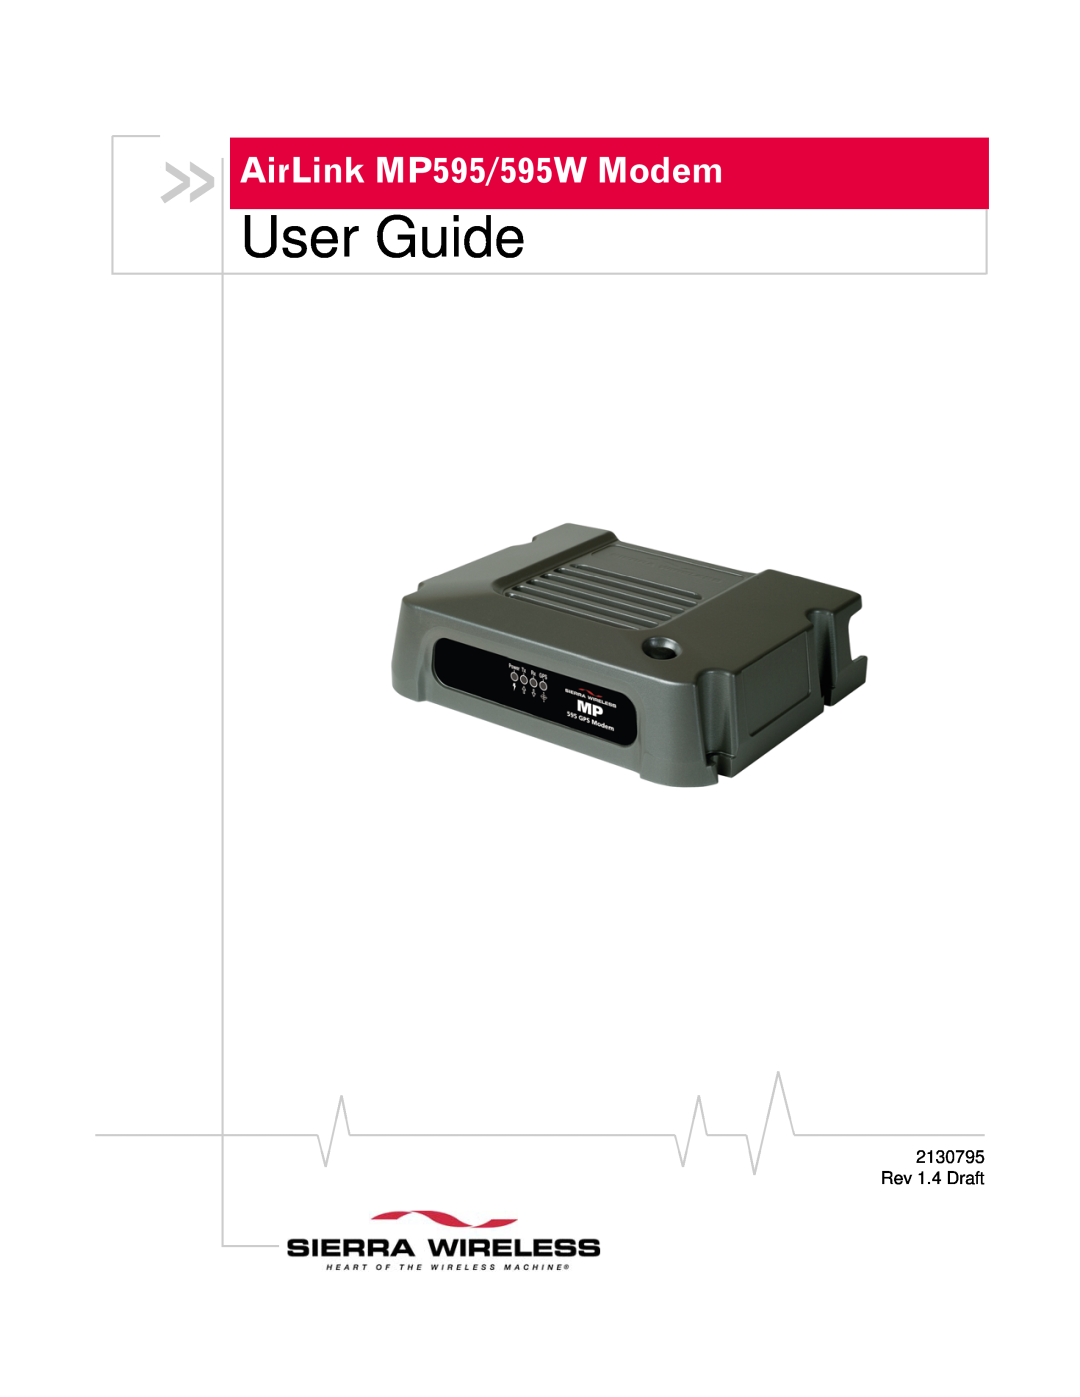 Sierra Wireless MP595W manual User Guide, AirLink MP595/595W Modem, 2130795, Rev 1.4 Draft 